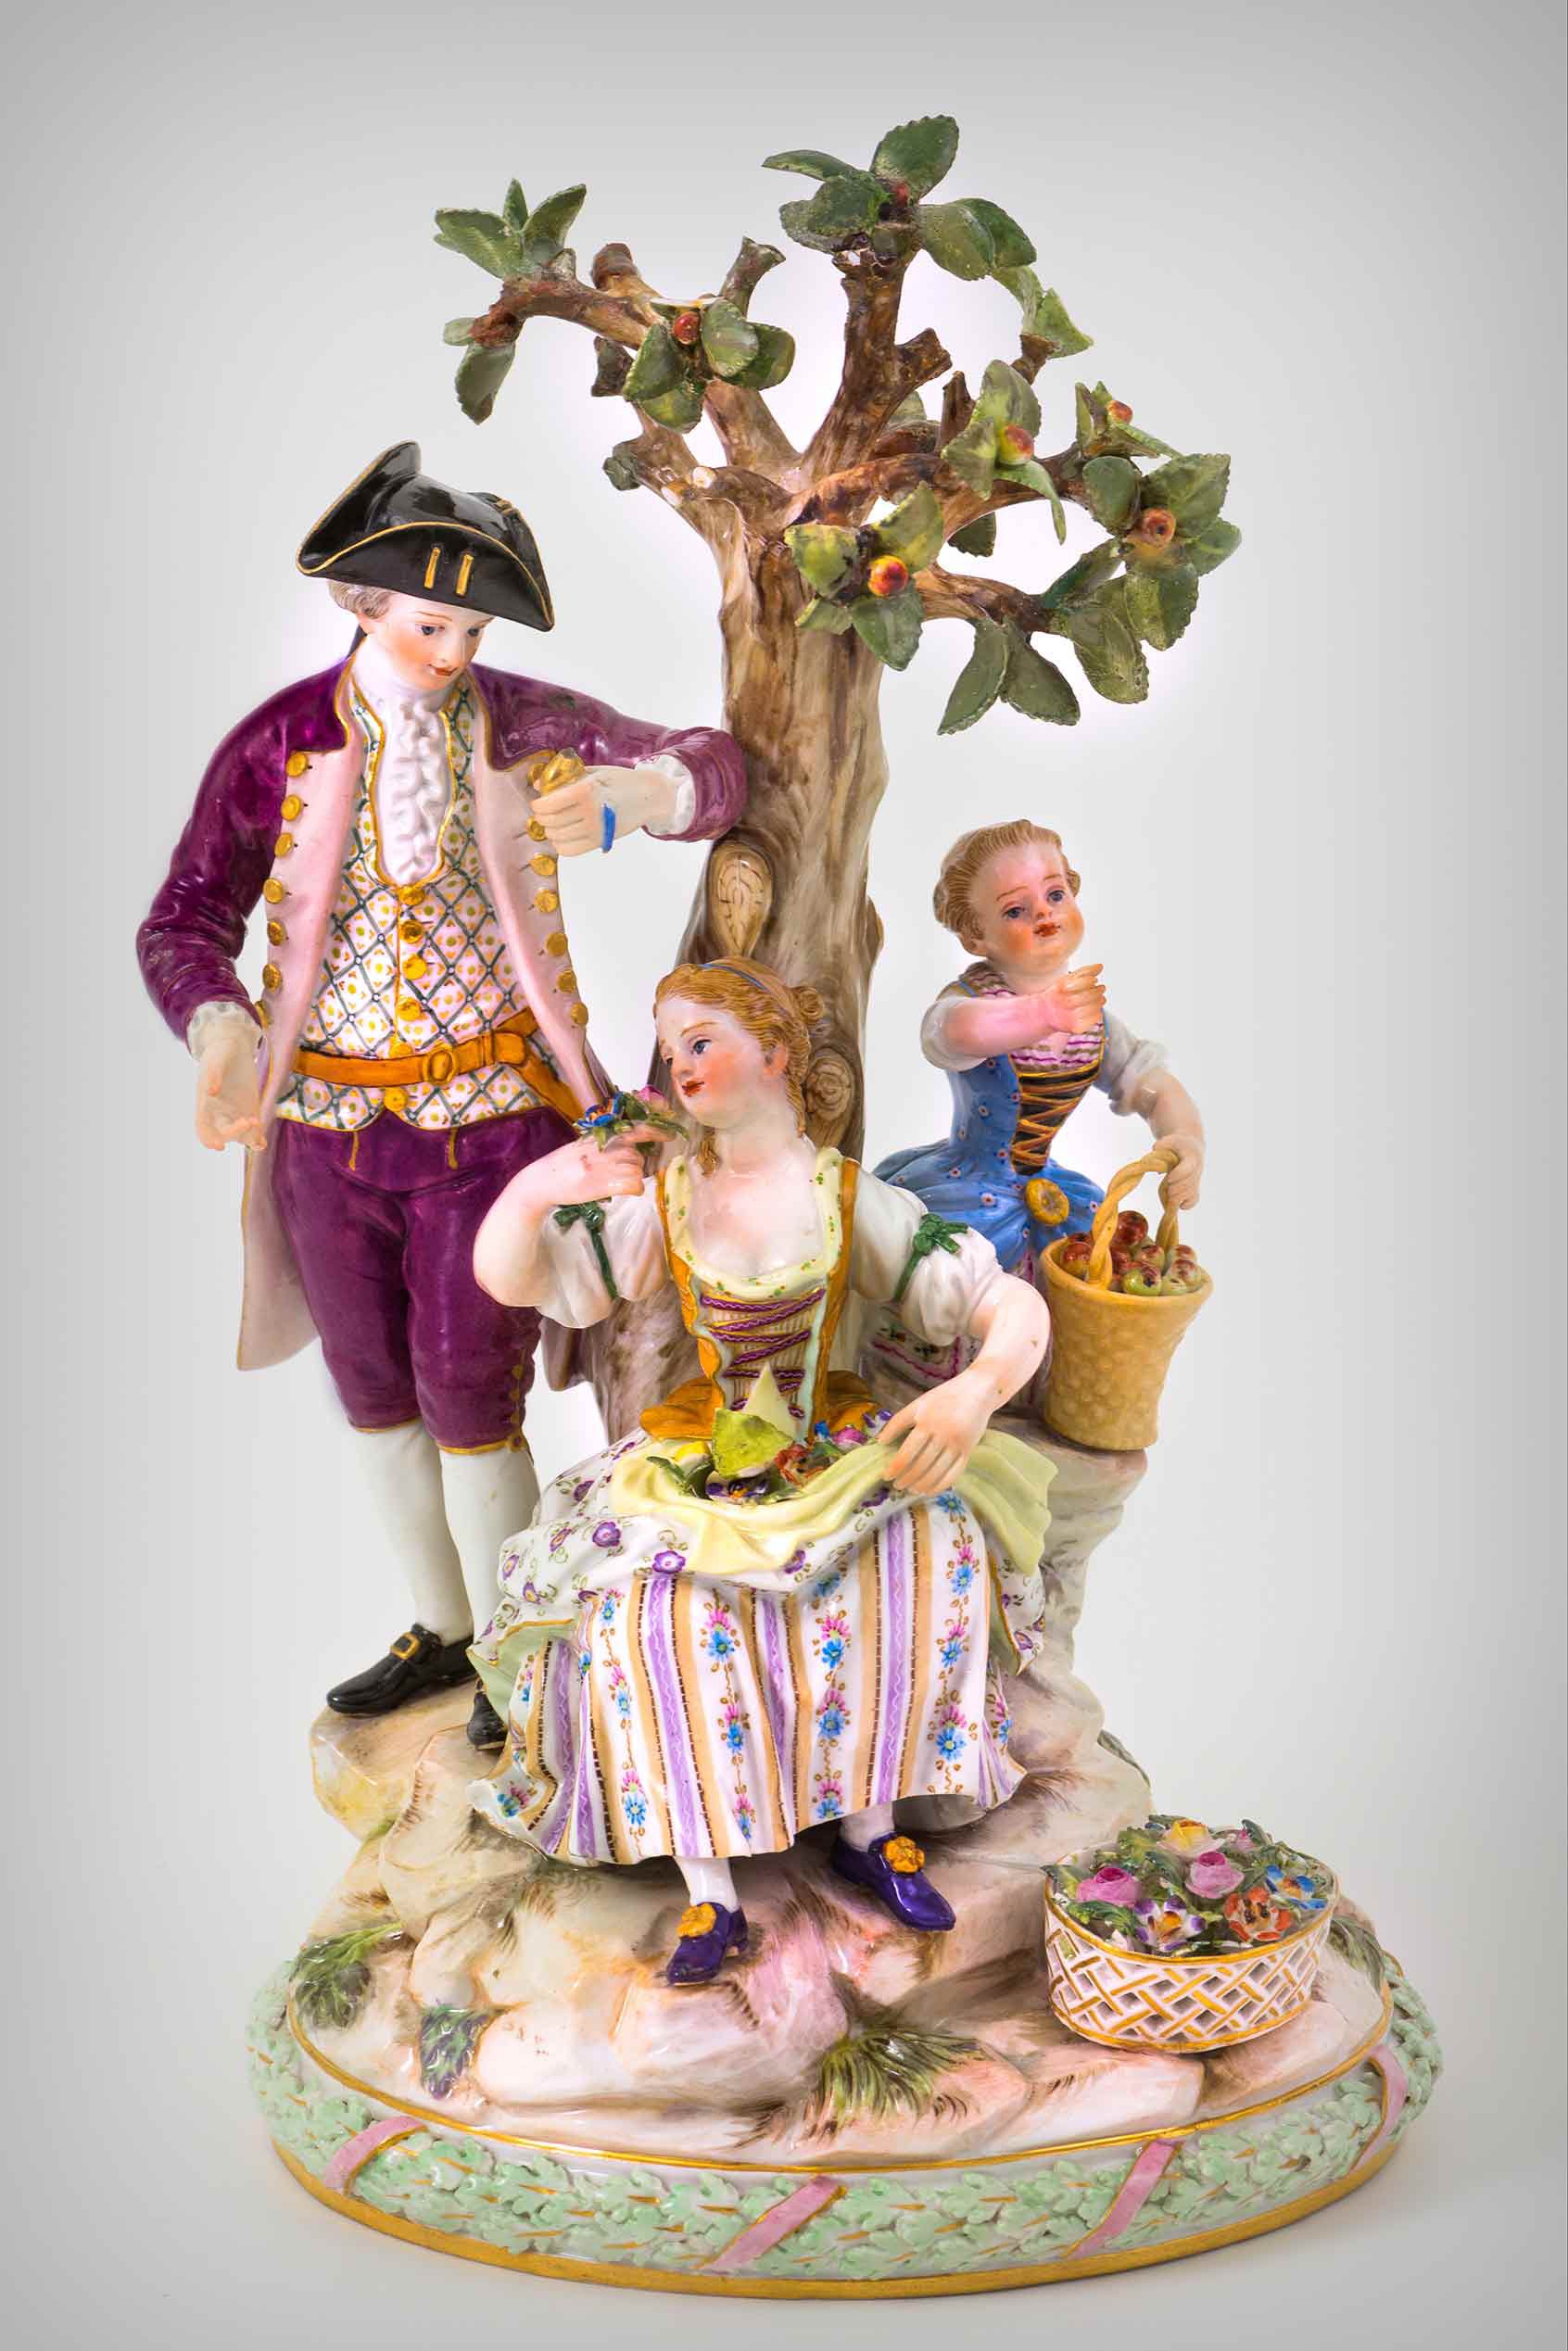 Skupina rokokového kavalíra se dvěma venkovankami pod stromem je typickou ukázkou míšeňské figurální tvorby. Zde varianta z 19. století.